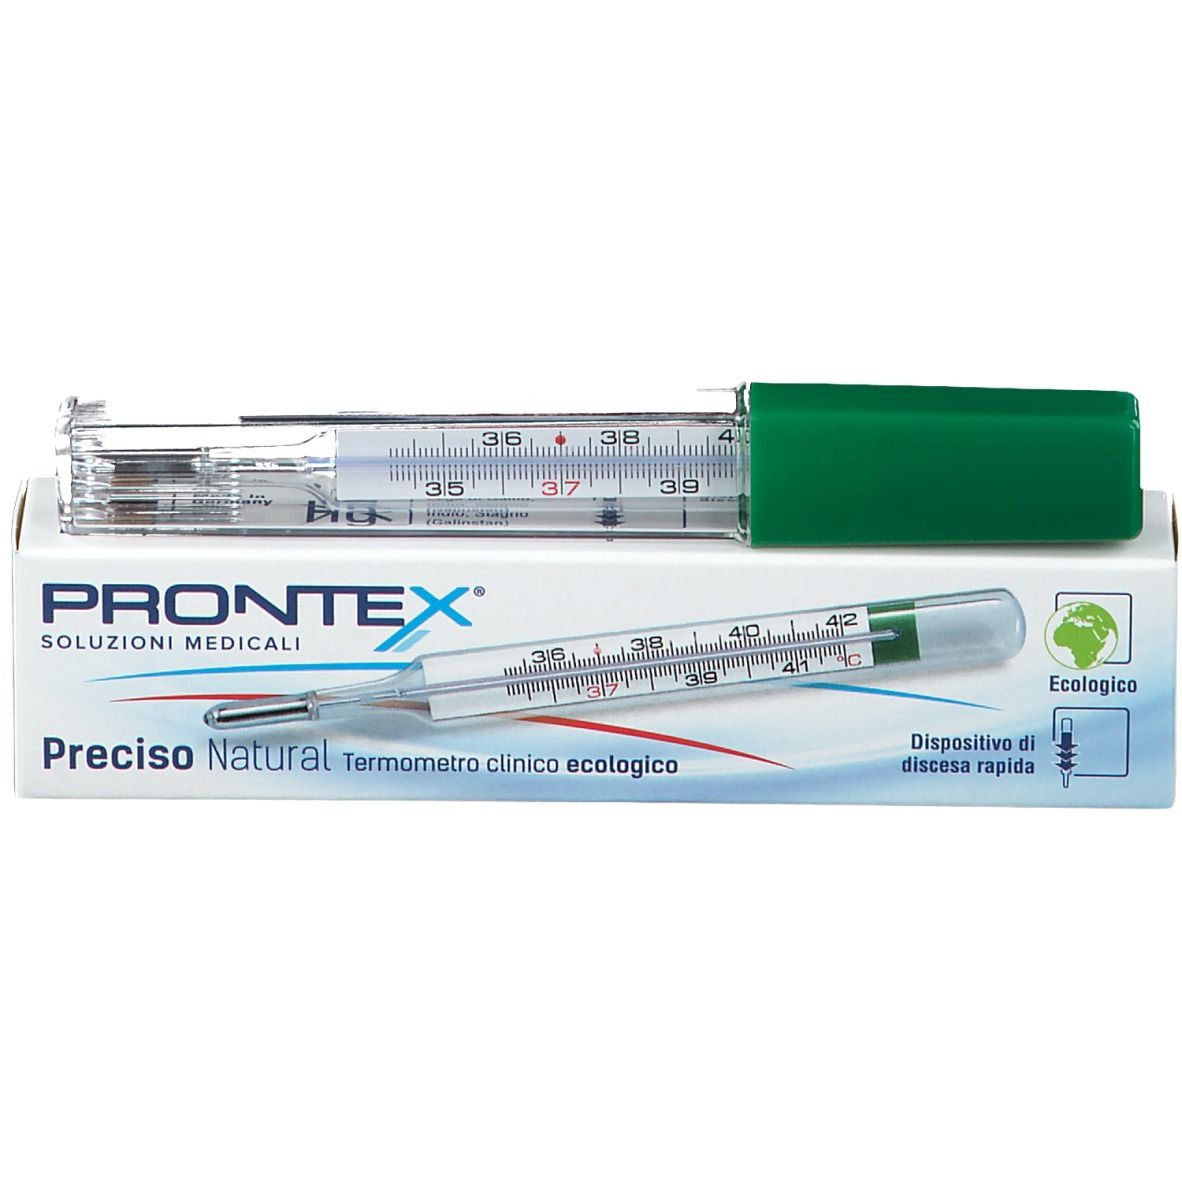 PRONTEX Preciso natural Termometro clinico ecologico